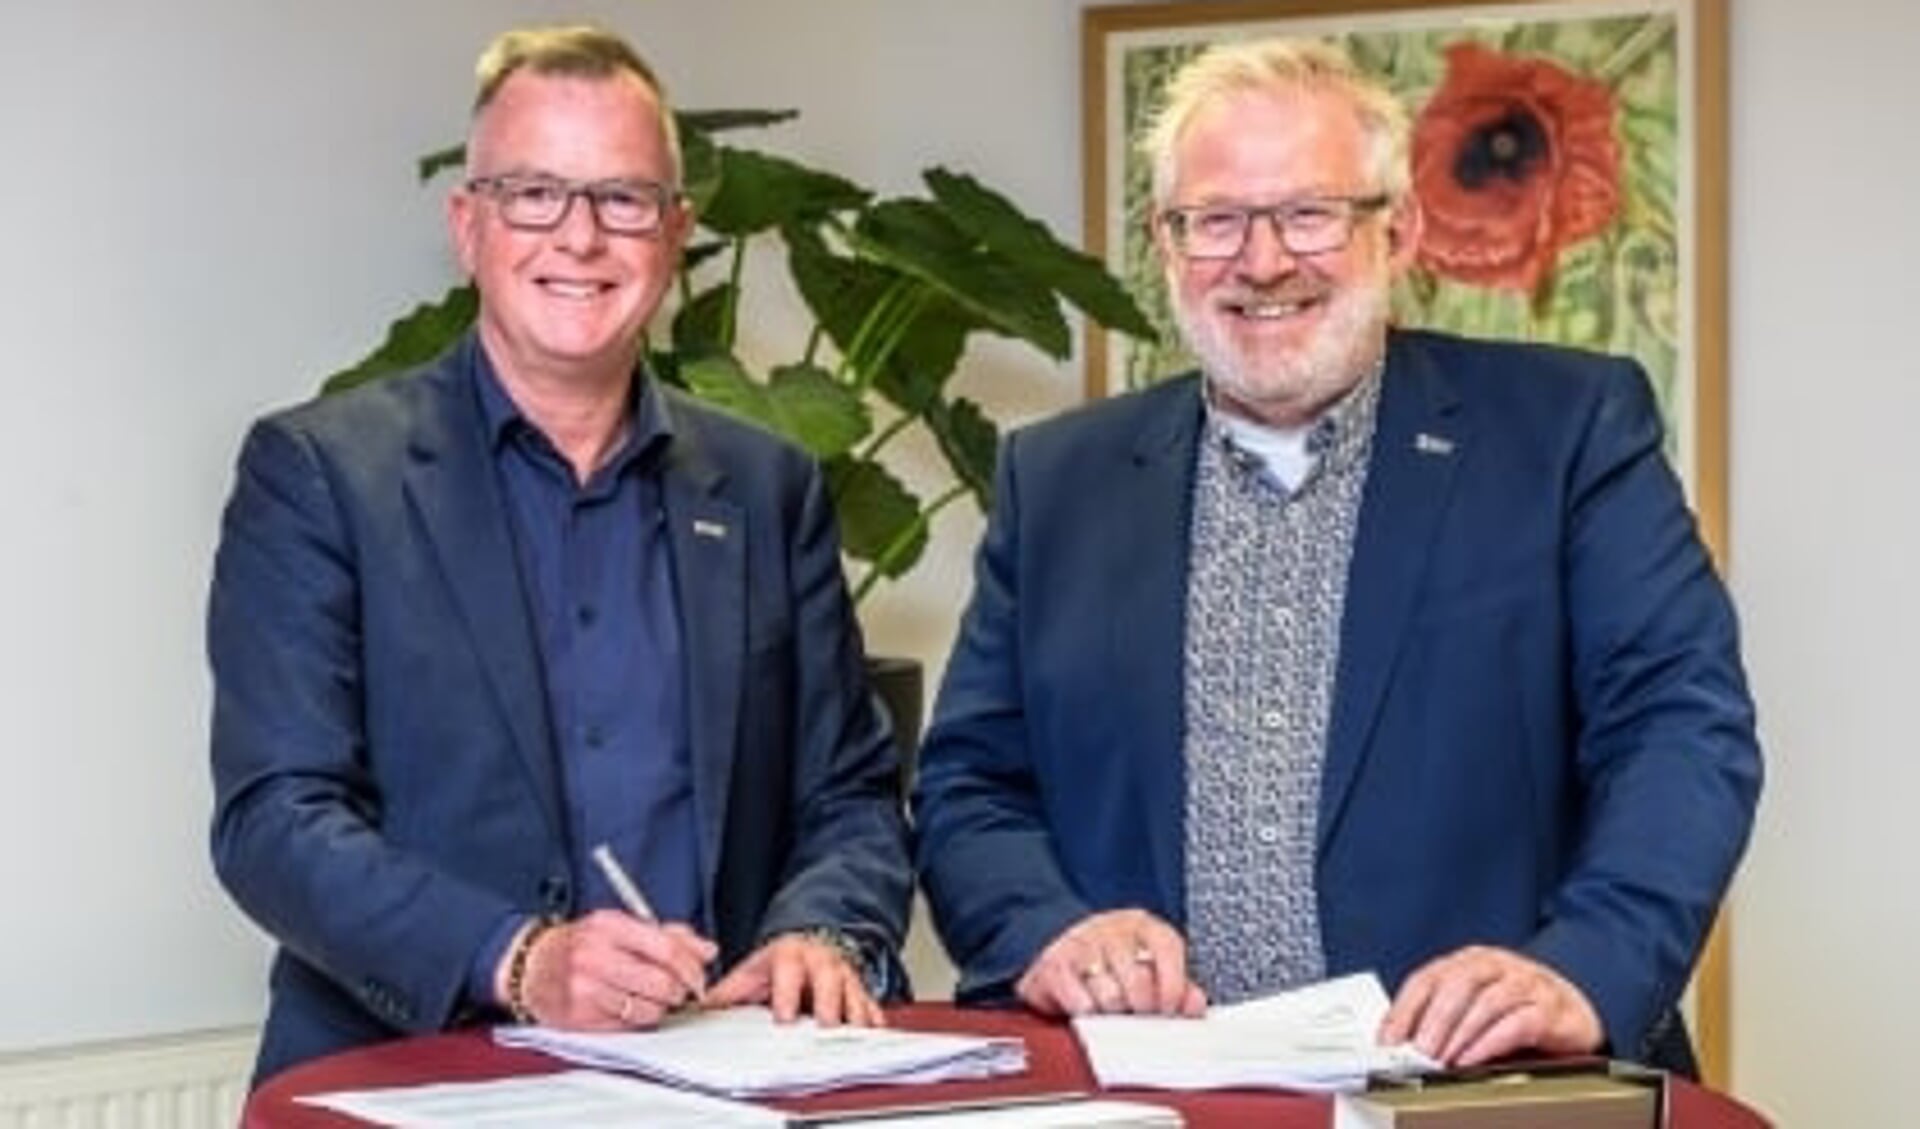 Wethouder Rolf van Wanrooij van gemeente Wormerland en directeur John van Nimwegen van WormerWonen zetten handtekening onder anterieure overeenkomst.